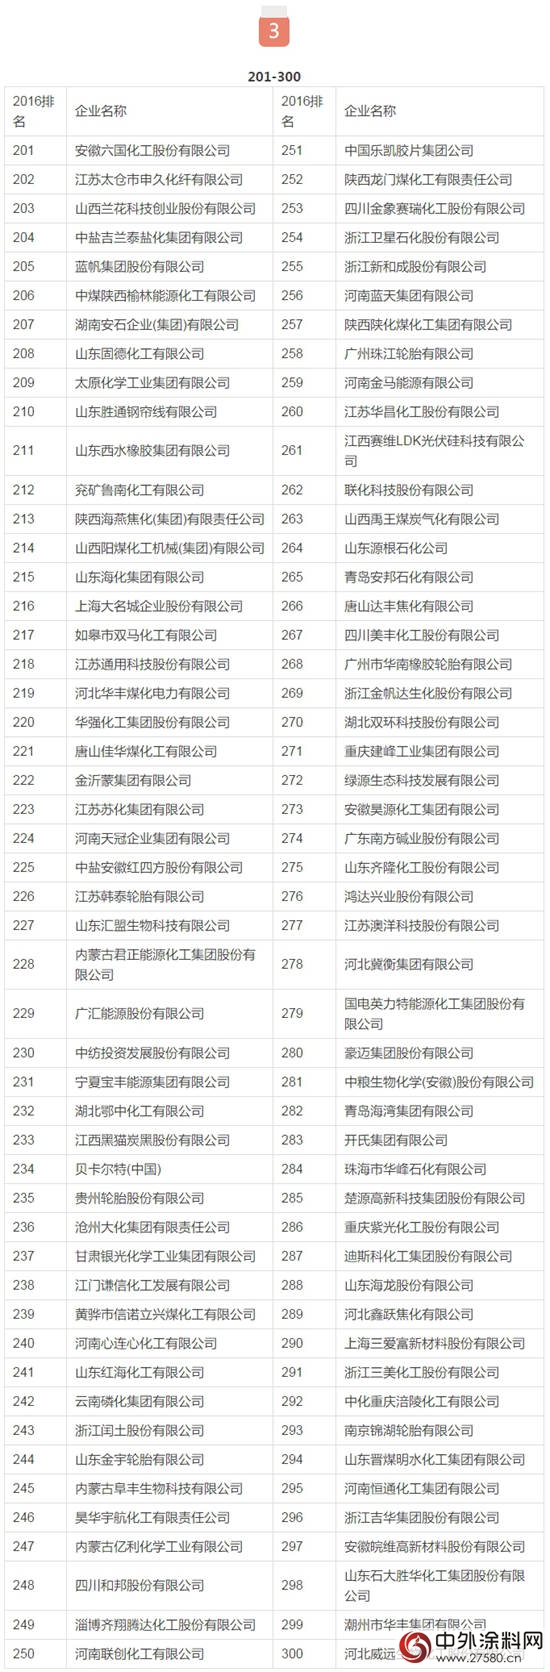 2016中国化工企业500强榜单发布【完整榜单】"119353"